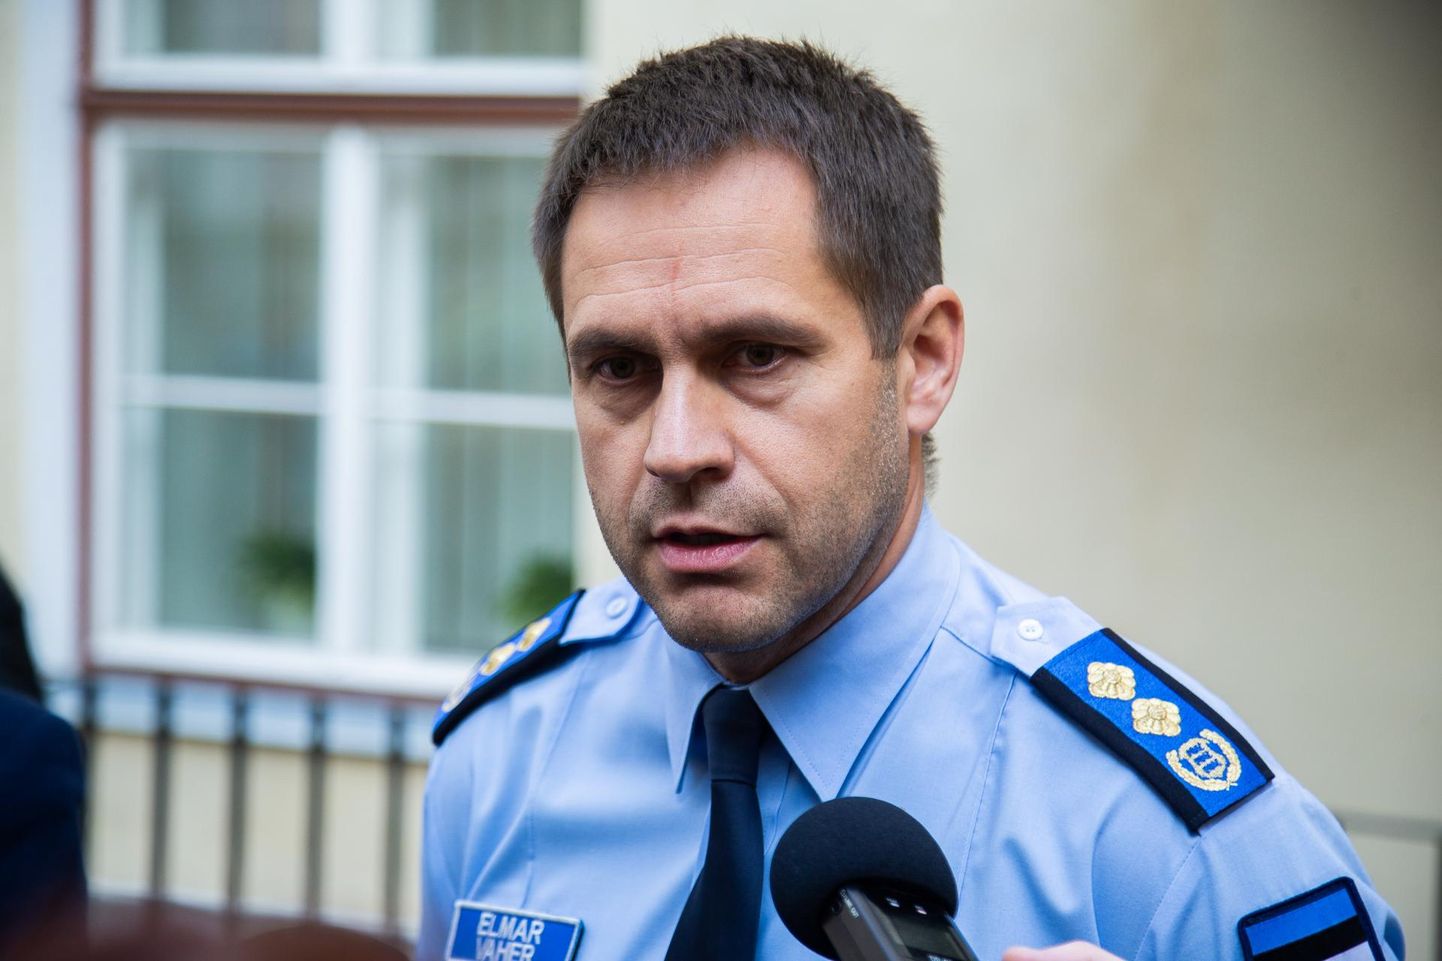 Politsei- ja piirivalveameti peadirektor Elmar Vaher.